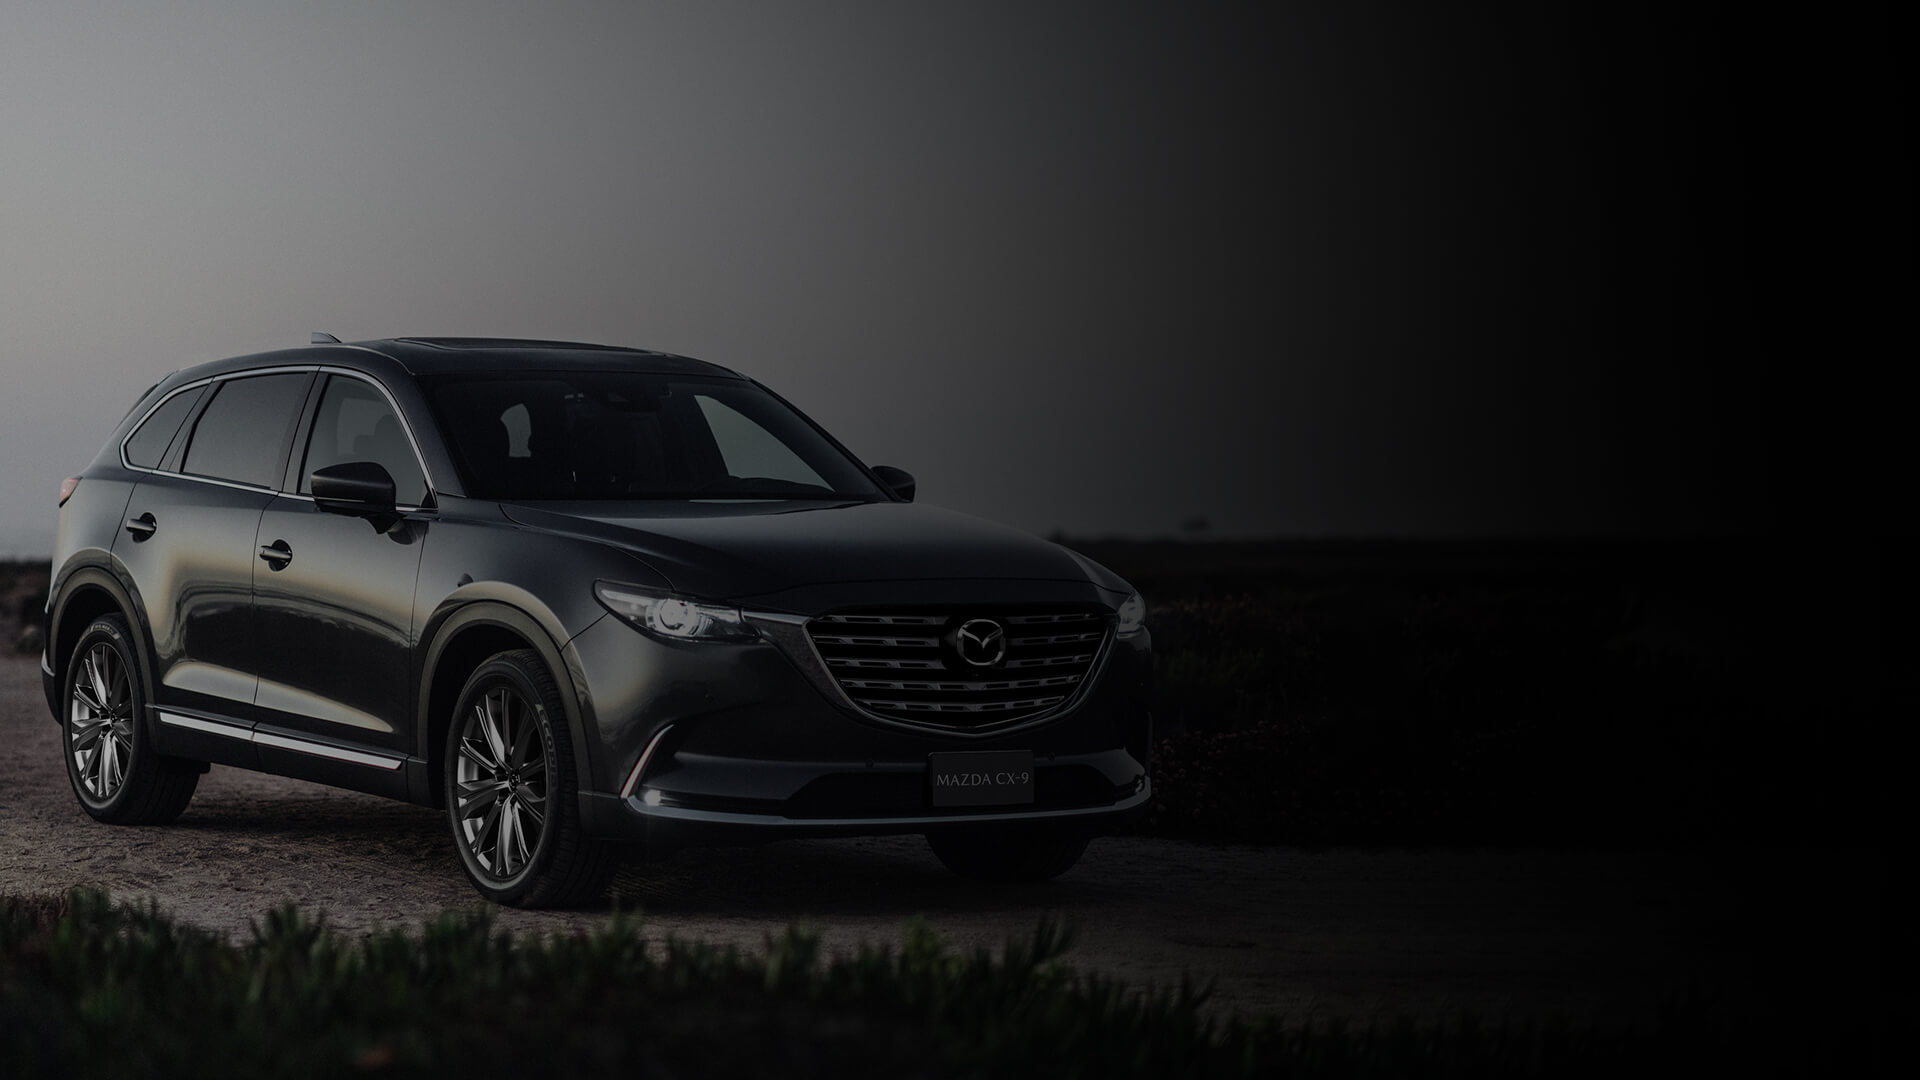 Sal rodando en tu Mazda con Jorge Cortés. Haz clic en el link y descubre nuestro Plan Exclusive de financiamiento. ¿Estás listo para vivir la experiencia Mazda?